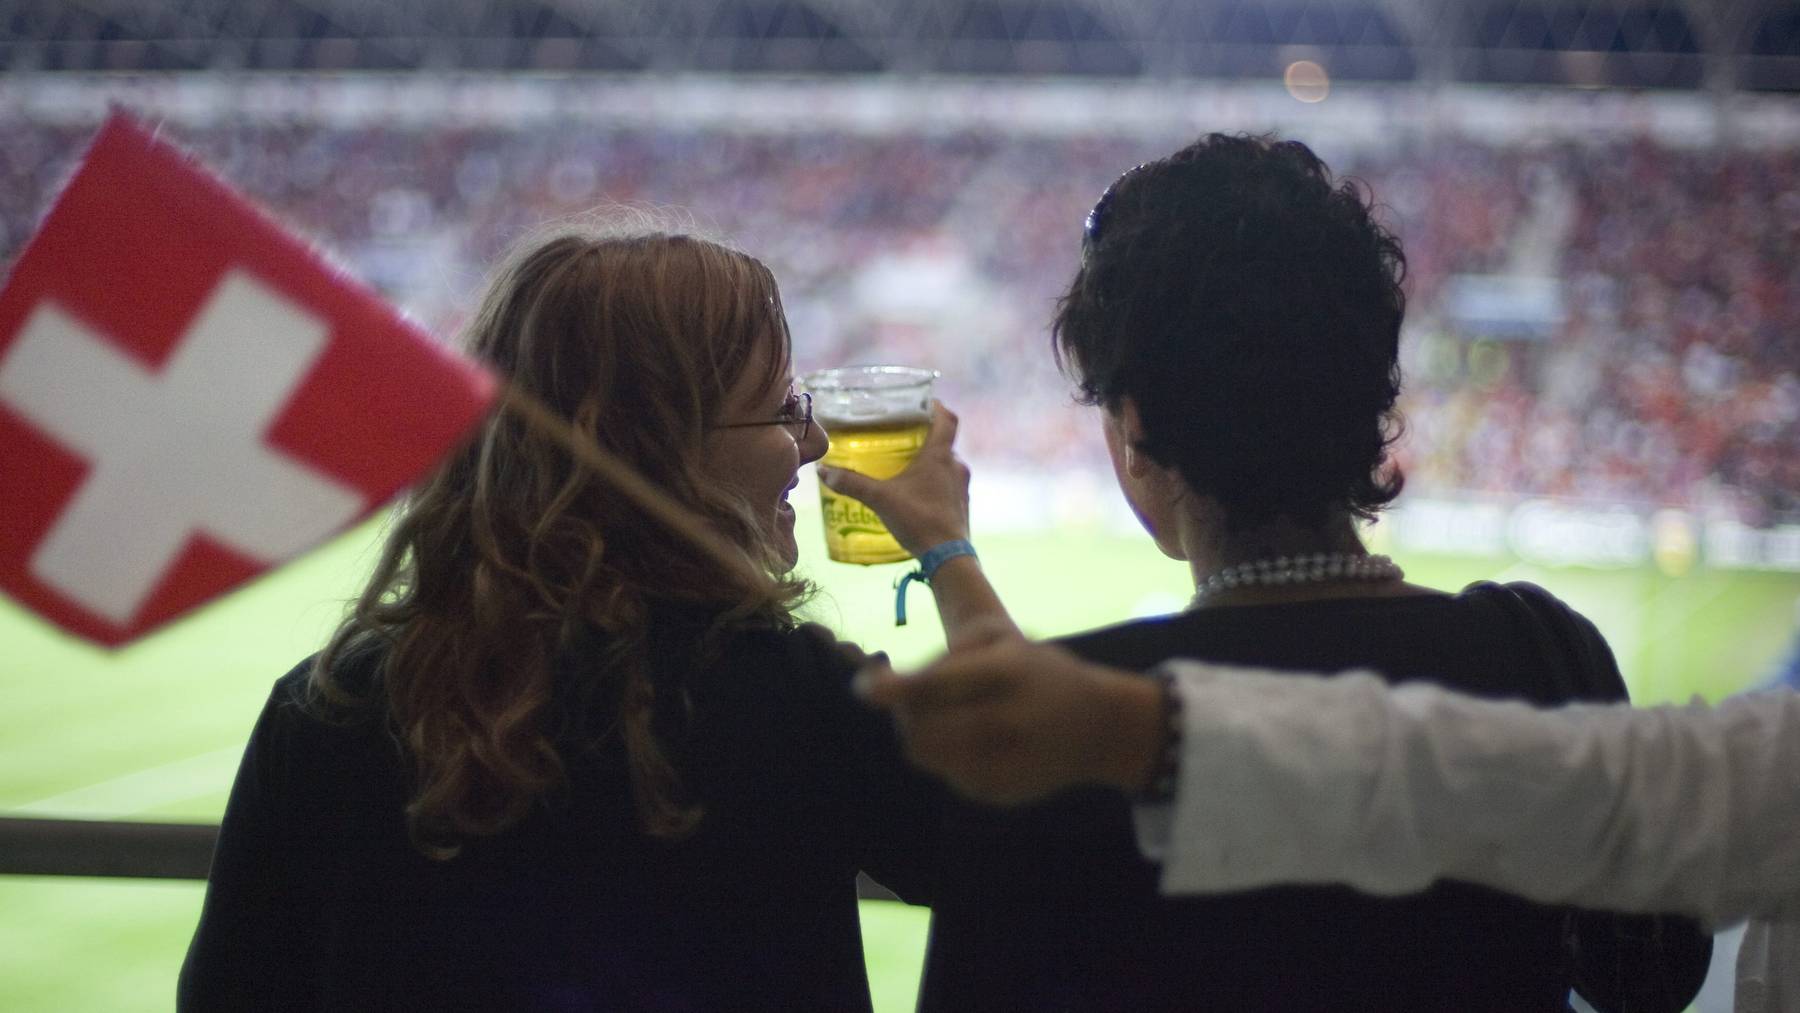 Gehört für viele Fans zum Fussballerlebnis: Ein kühles Bier. (Archiv)